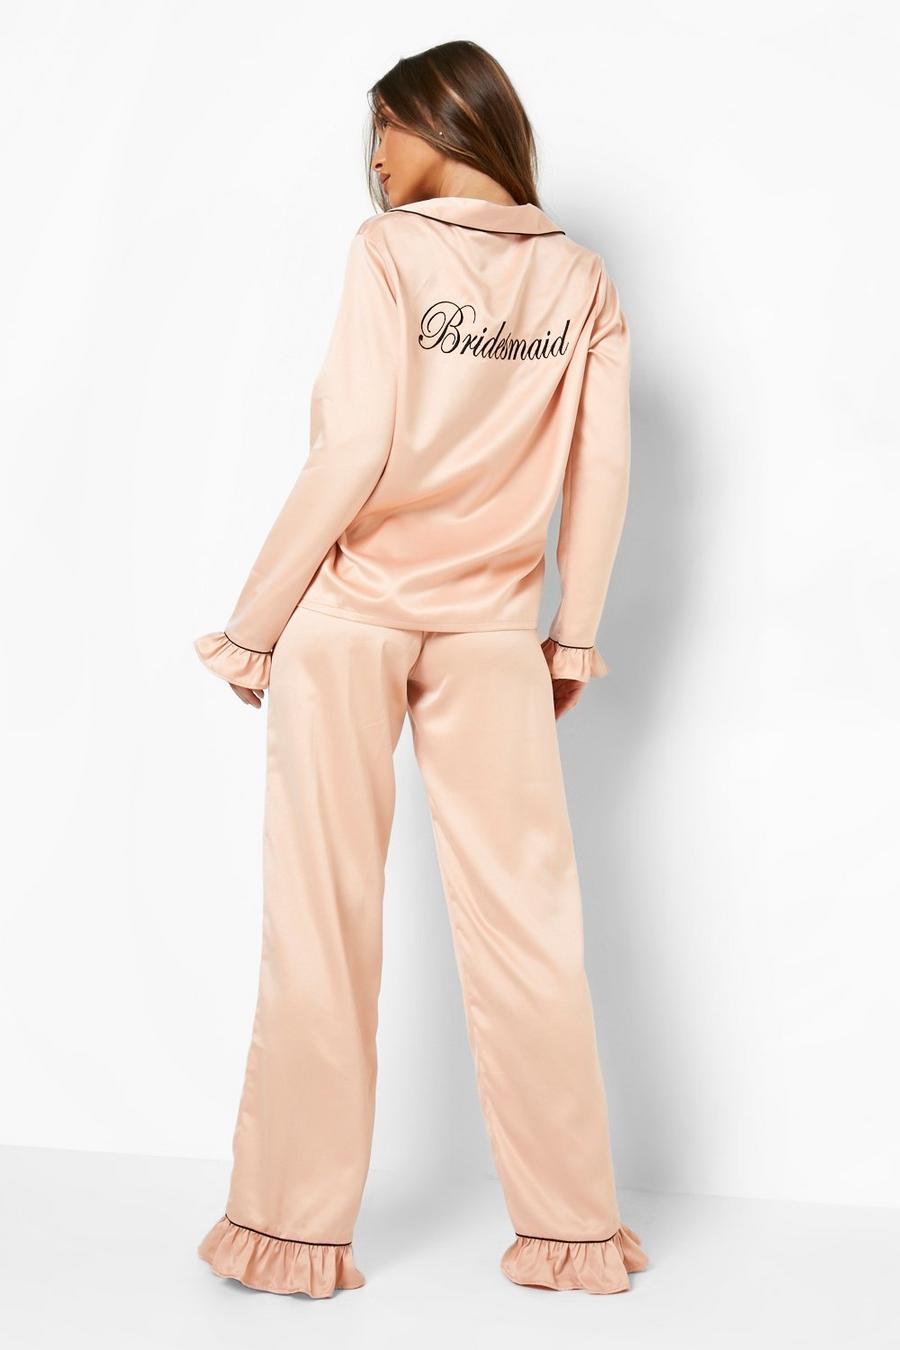 Premium Pyjama-Set mit Rüschen und Bridesmaid-Stickerei, Rose gold metallic